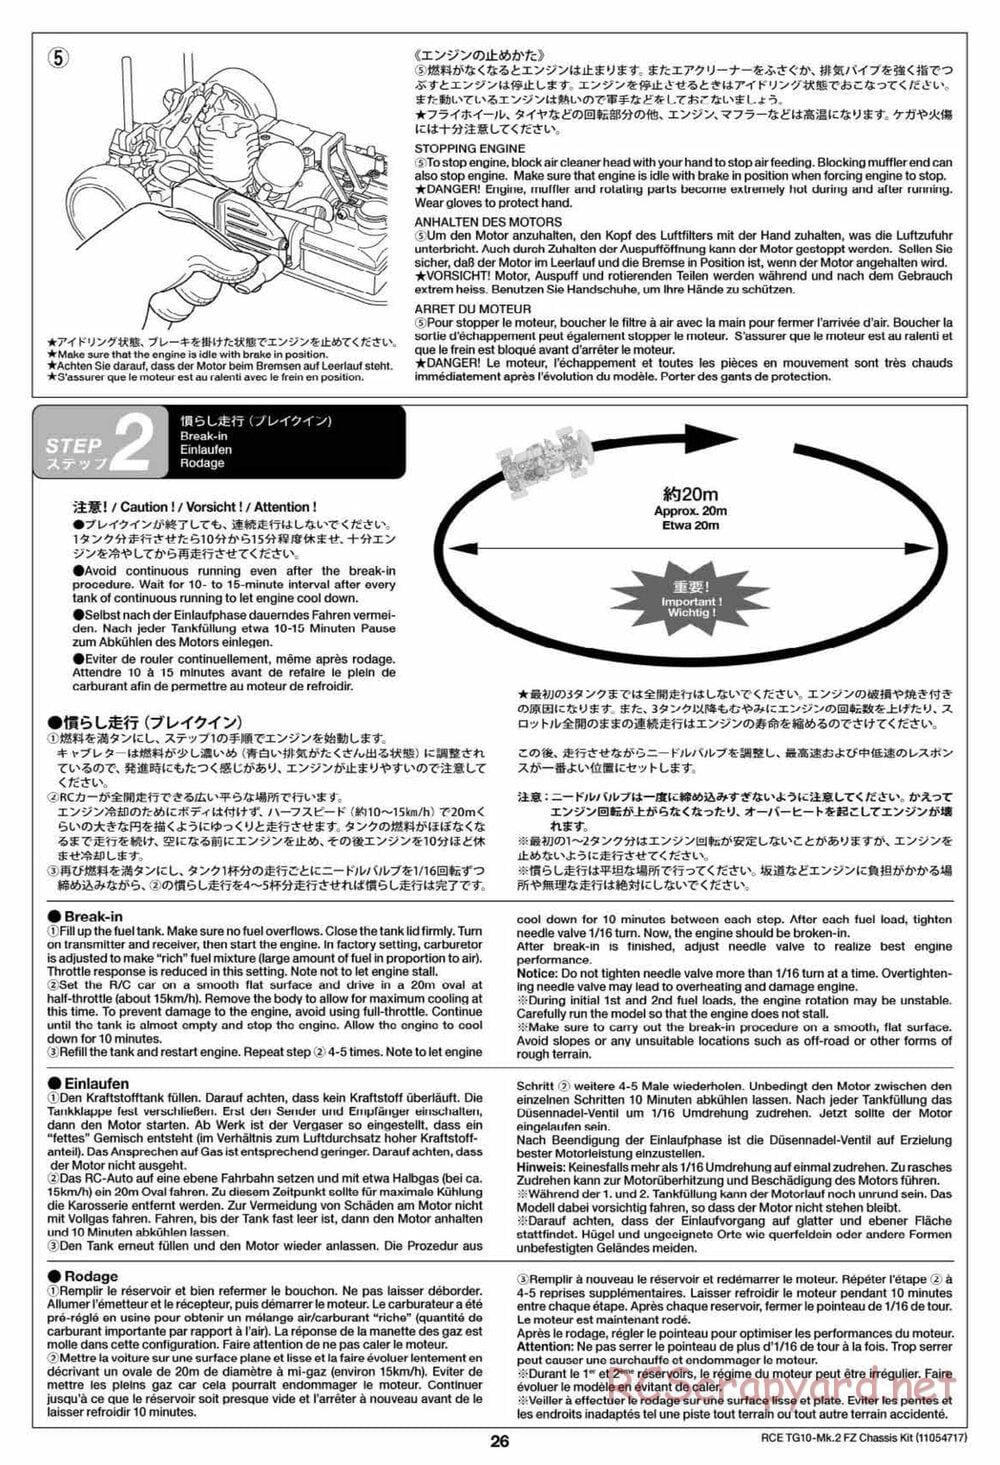 Tamiya - TG10 Mk.2 FZ Chassis - Manual - Page 26